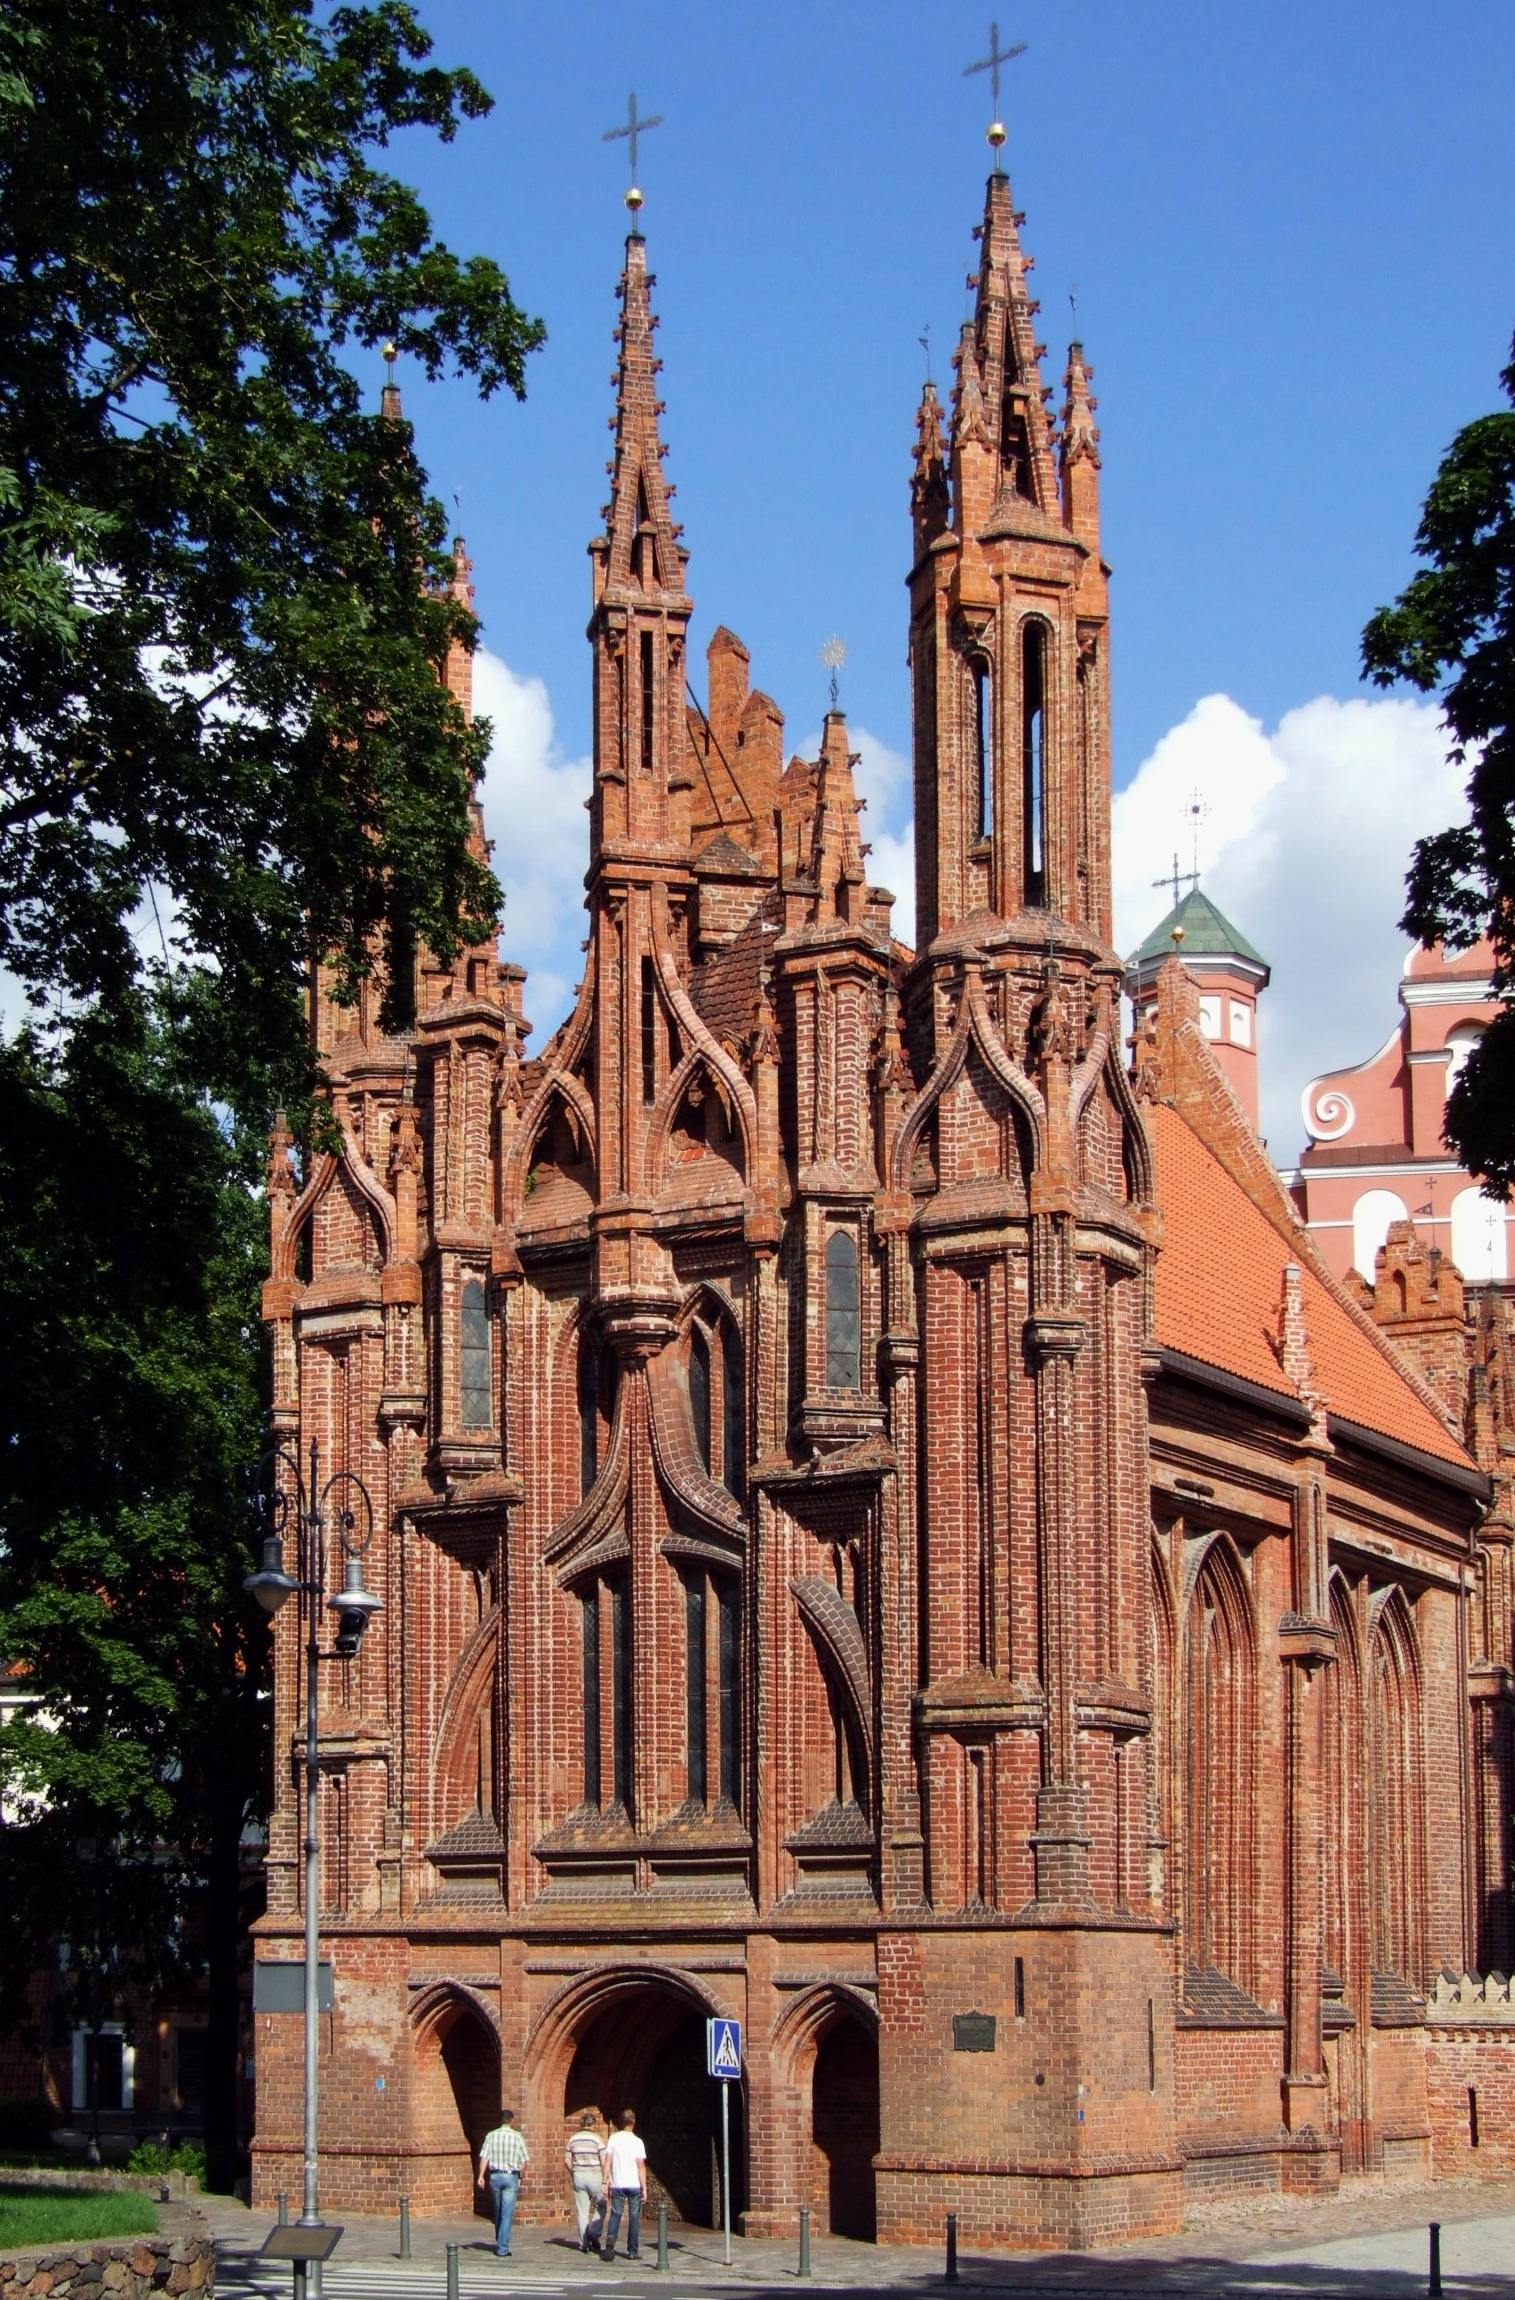 St._Anne%27s_Church_in_Vilnius_%28Wilno%